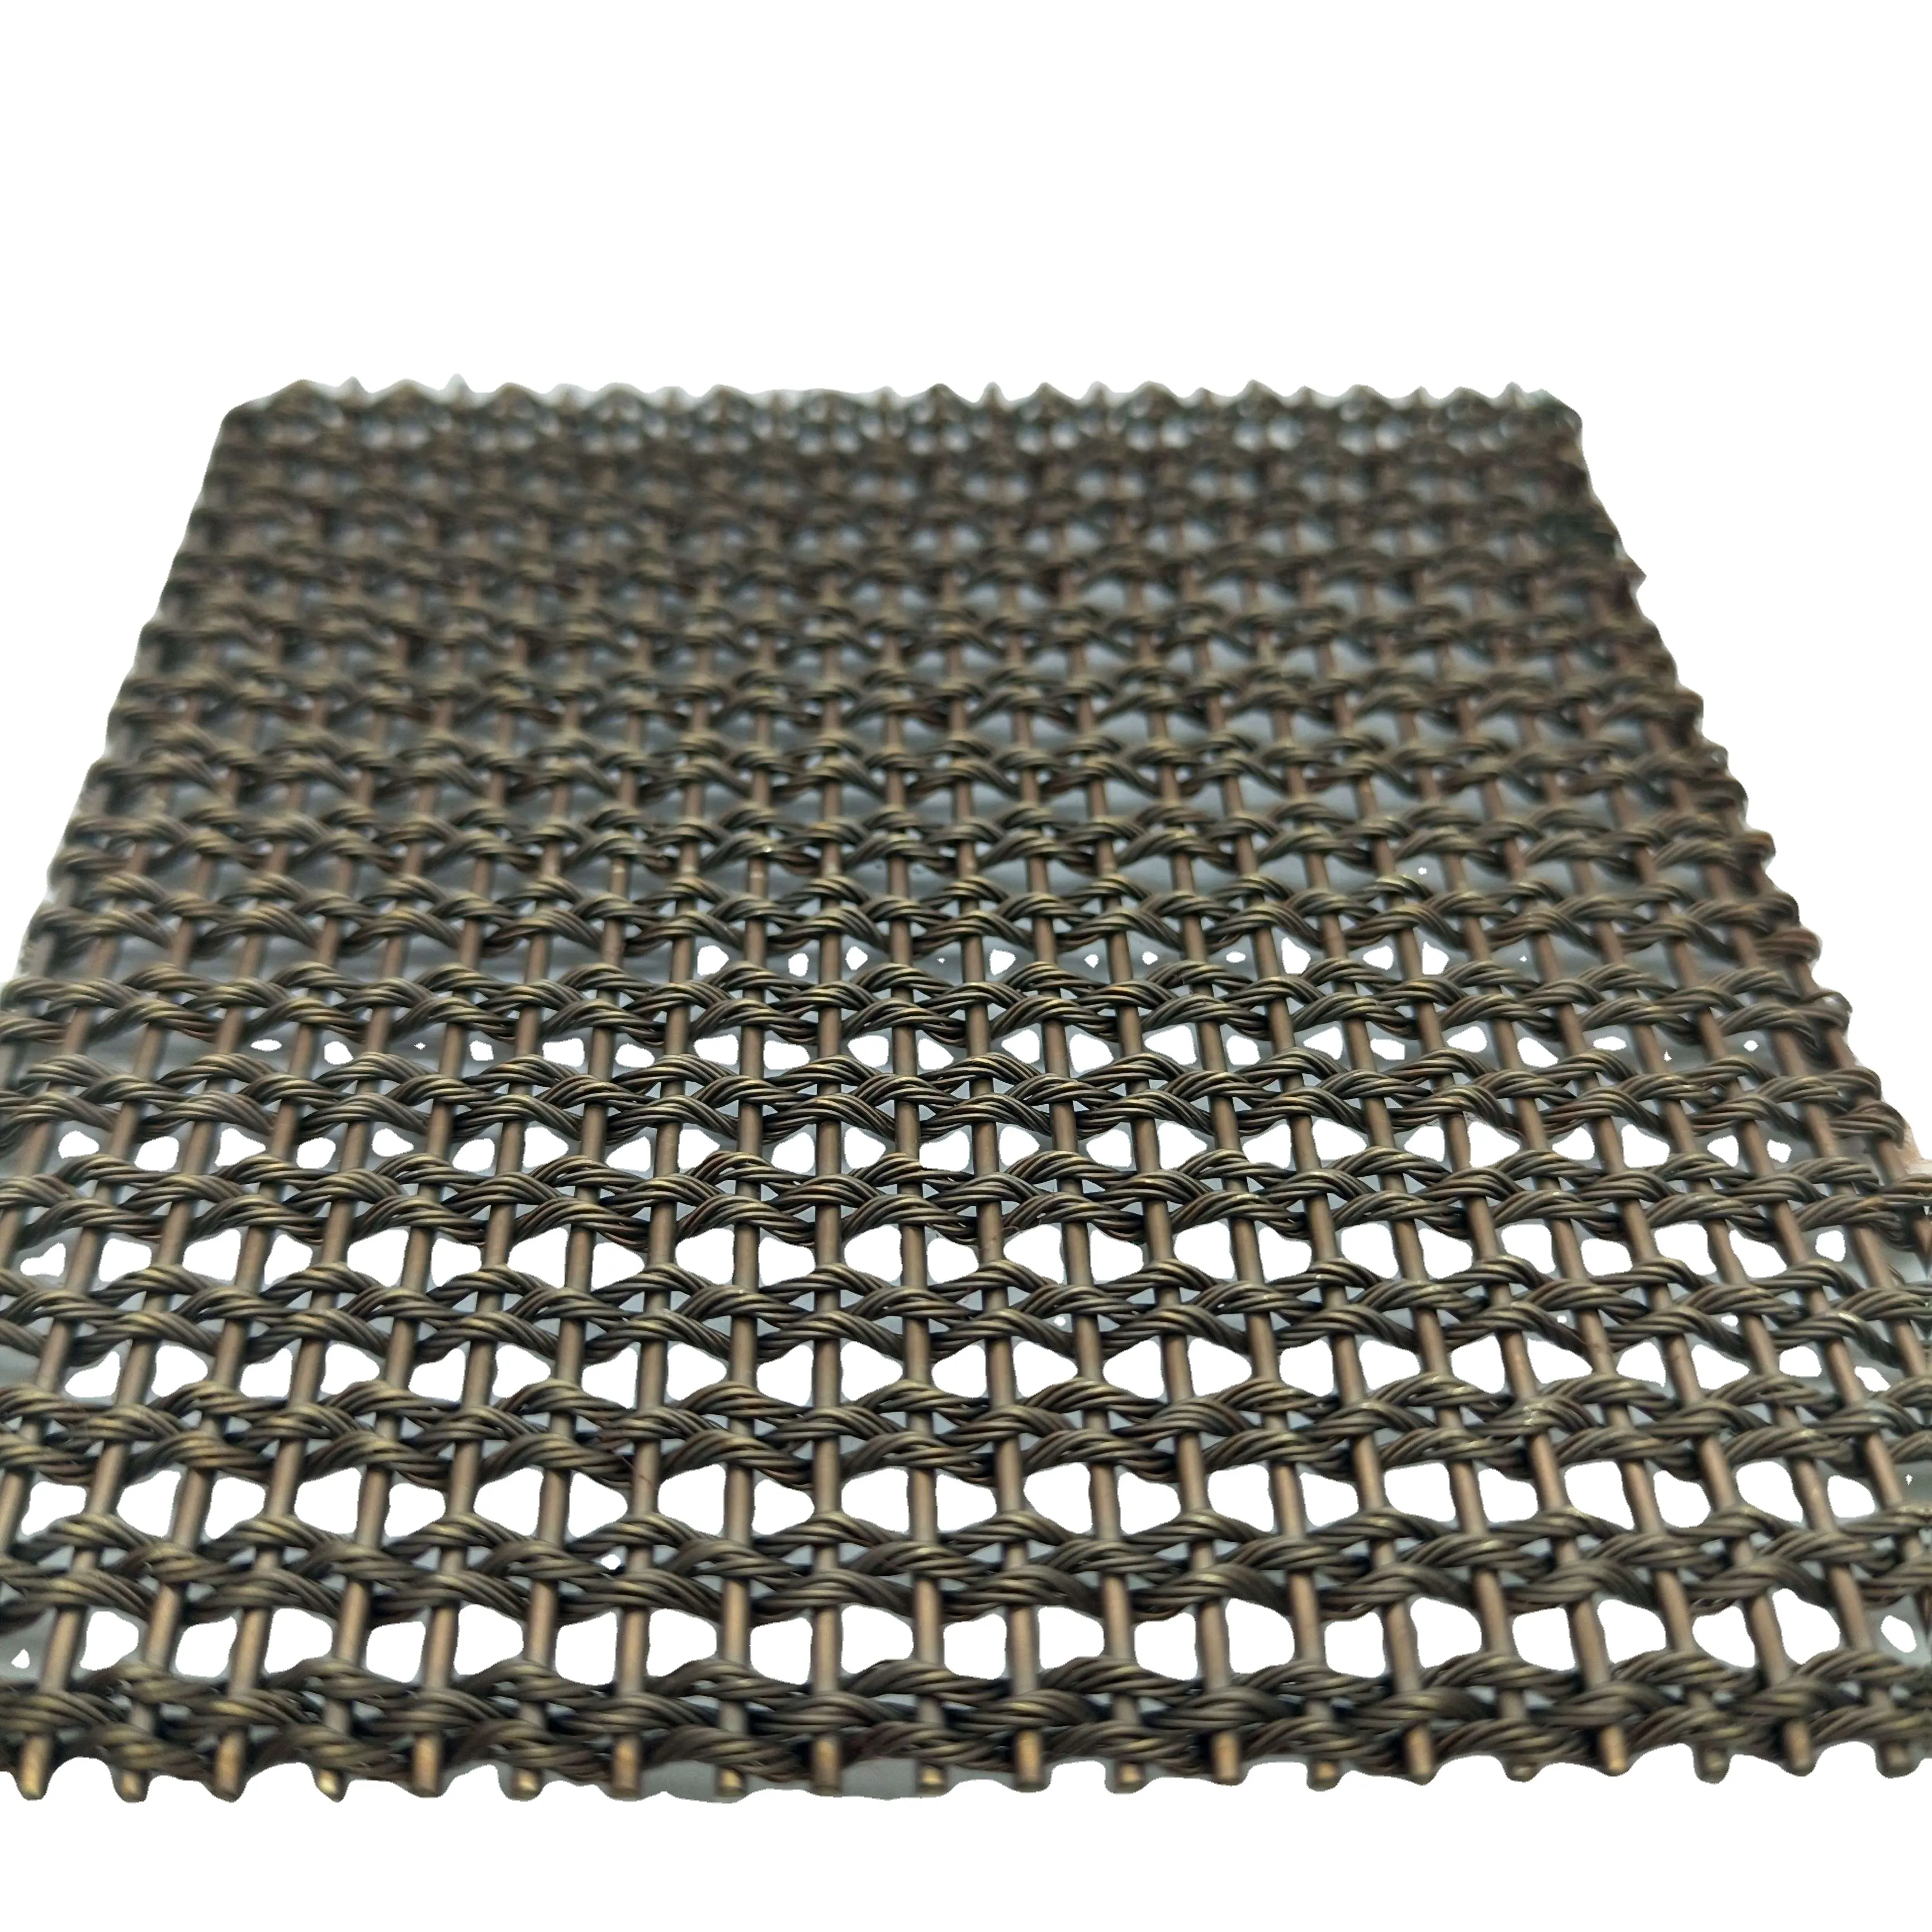 Maglia architettonica filtro in acciaio inox decorazione rete metallica decorativa per armadi mobili rete metallica per la coltivazione di piante